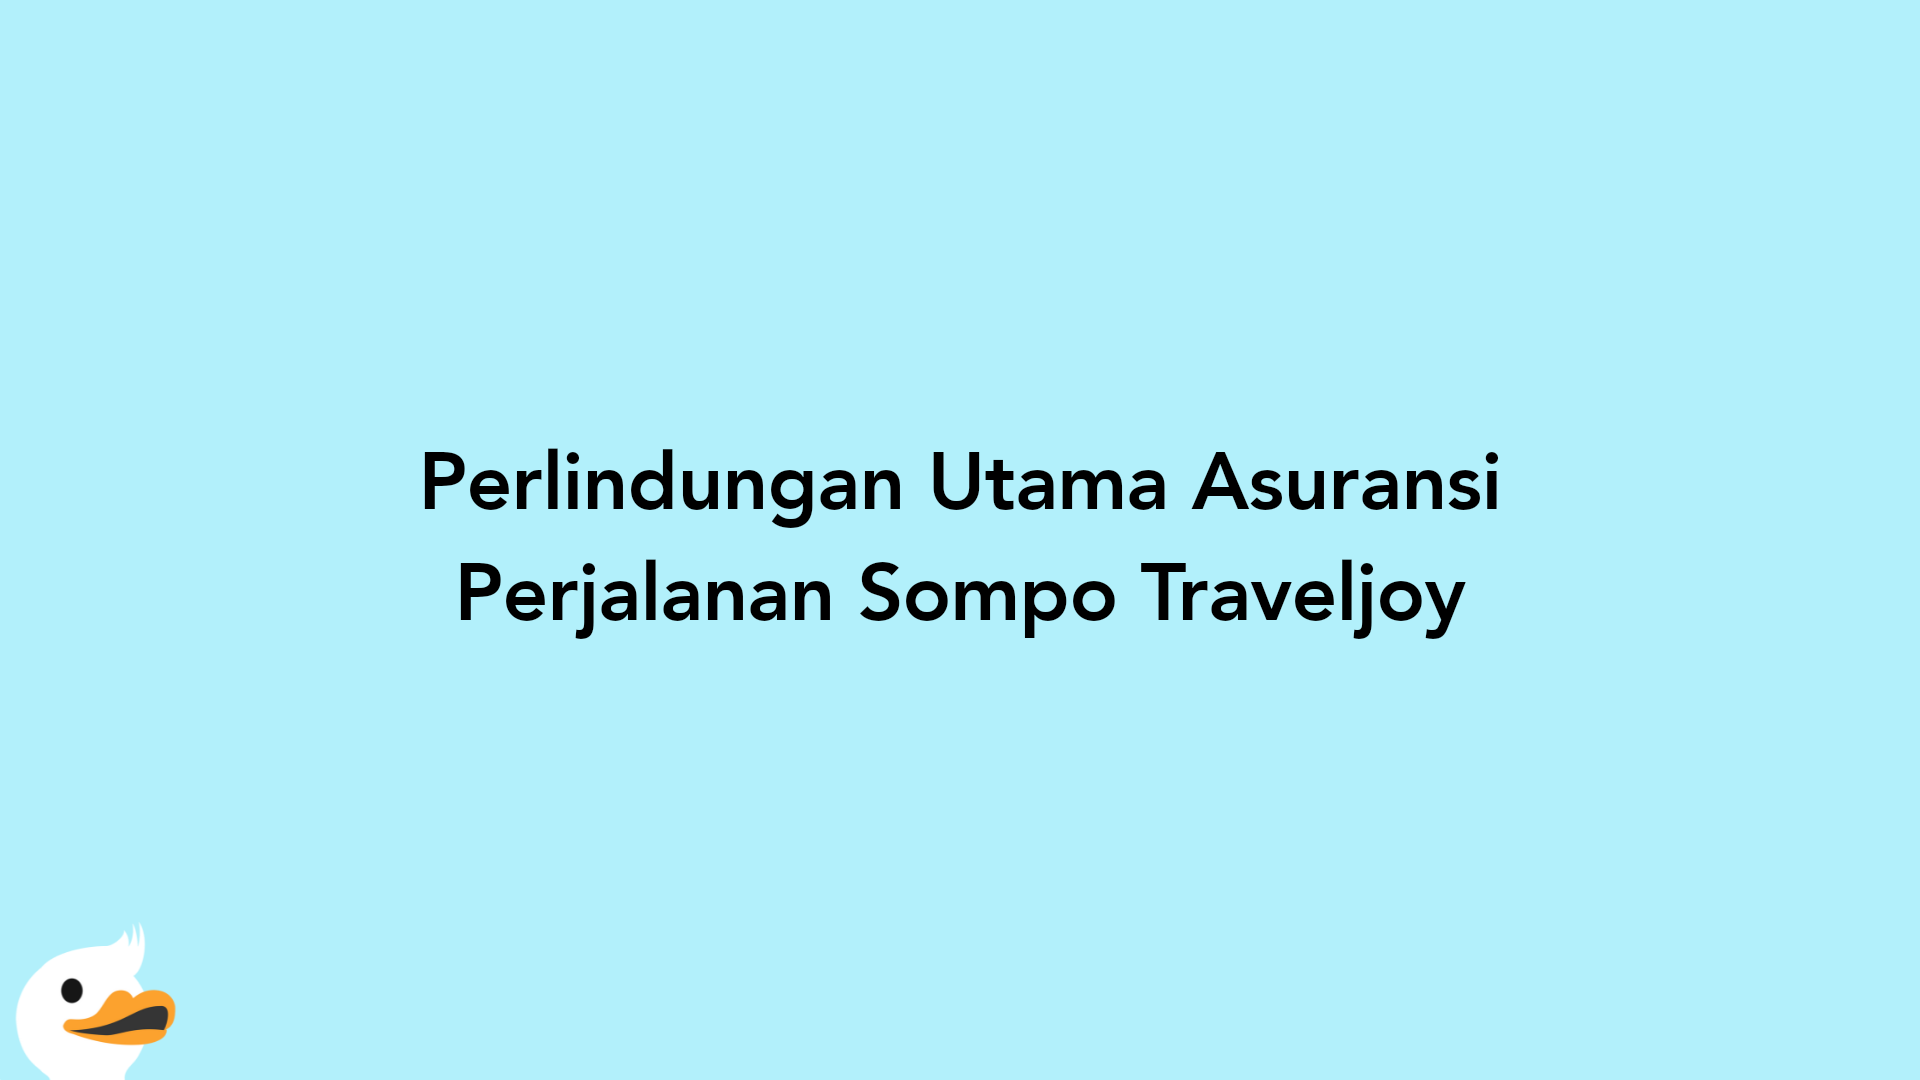 Perlindungan Utama Asuransi Perjalanan Sompo Traveljoy